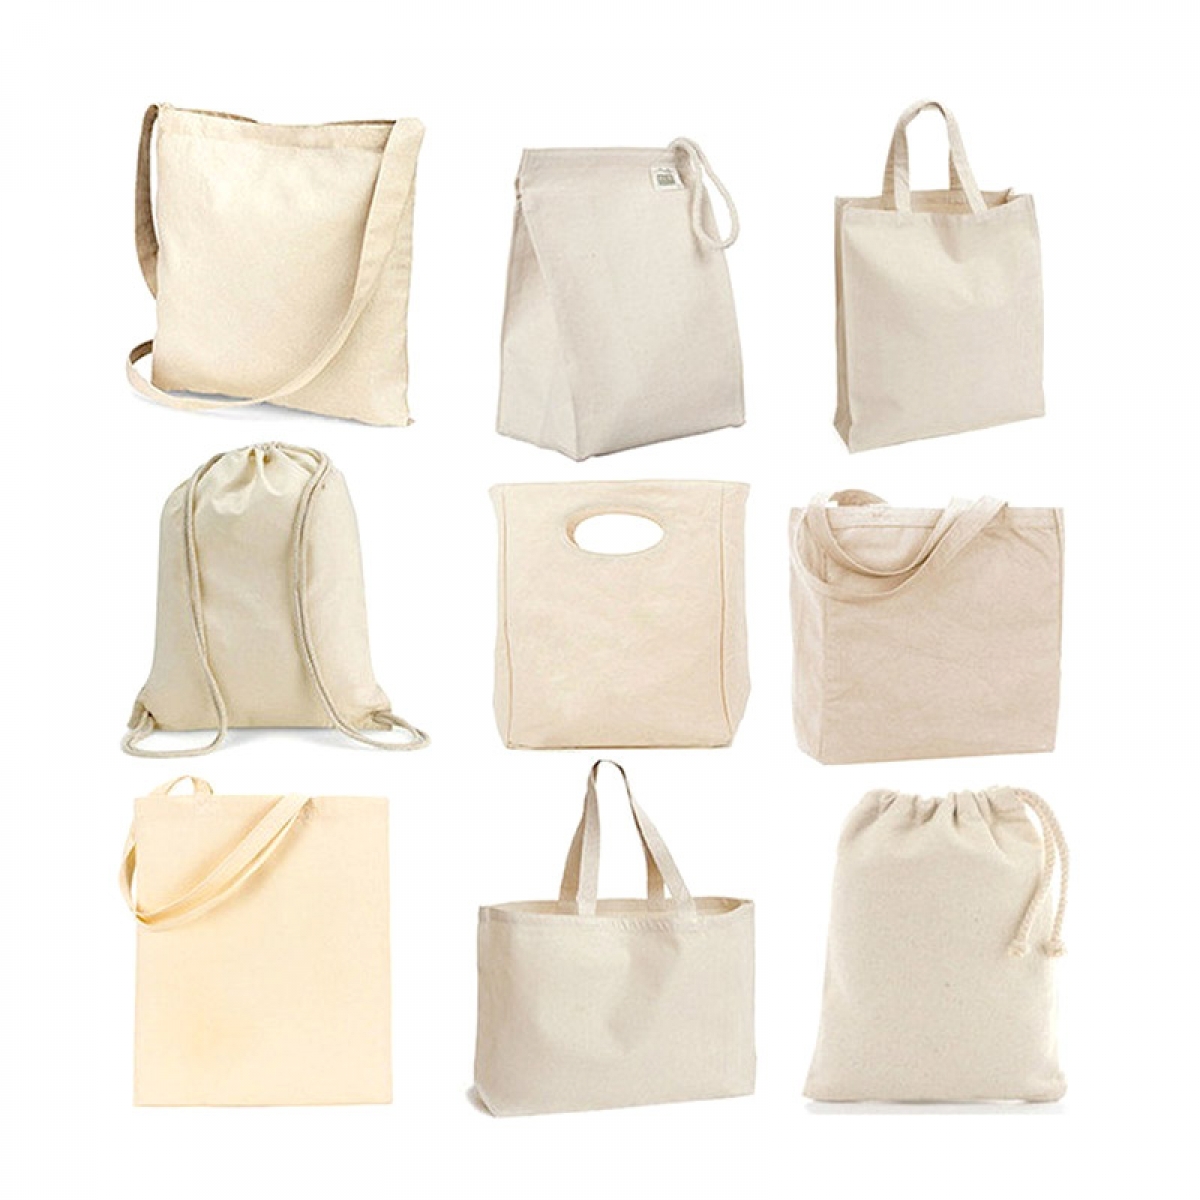 Hand made Non-woven bags